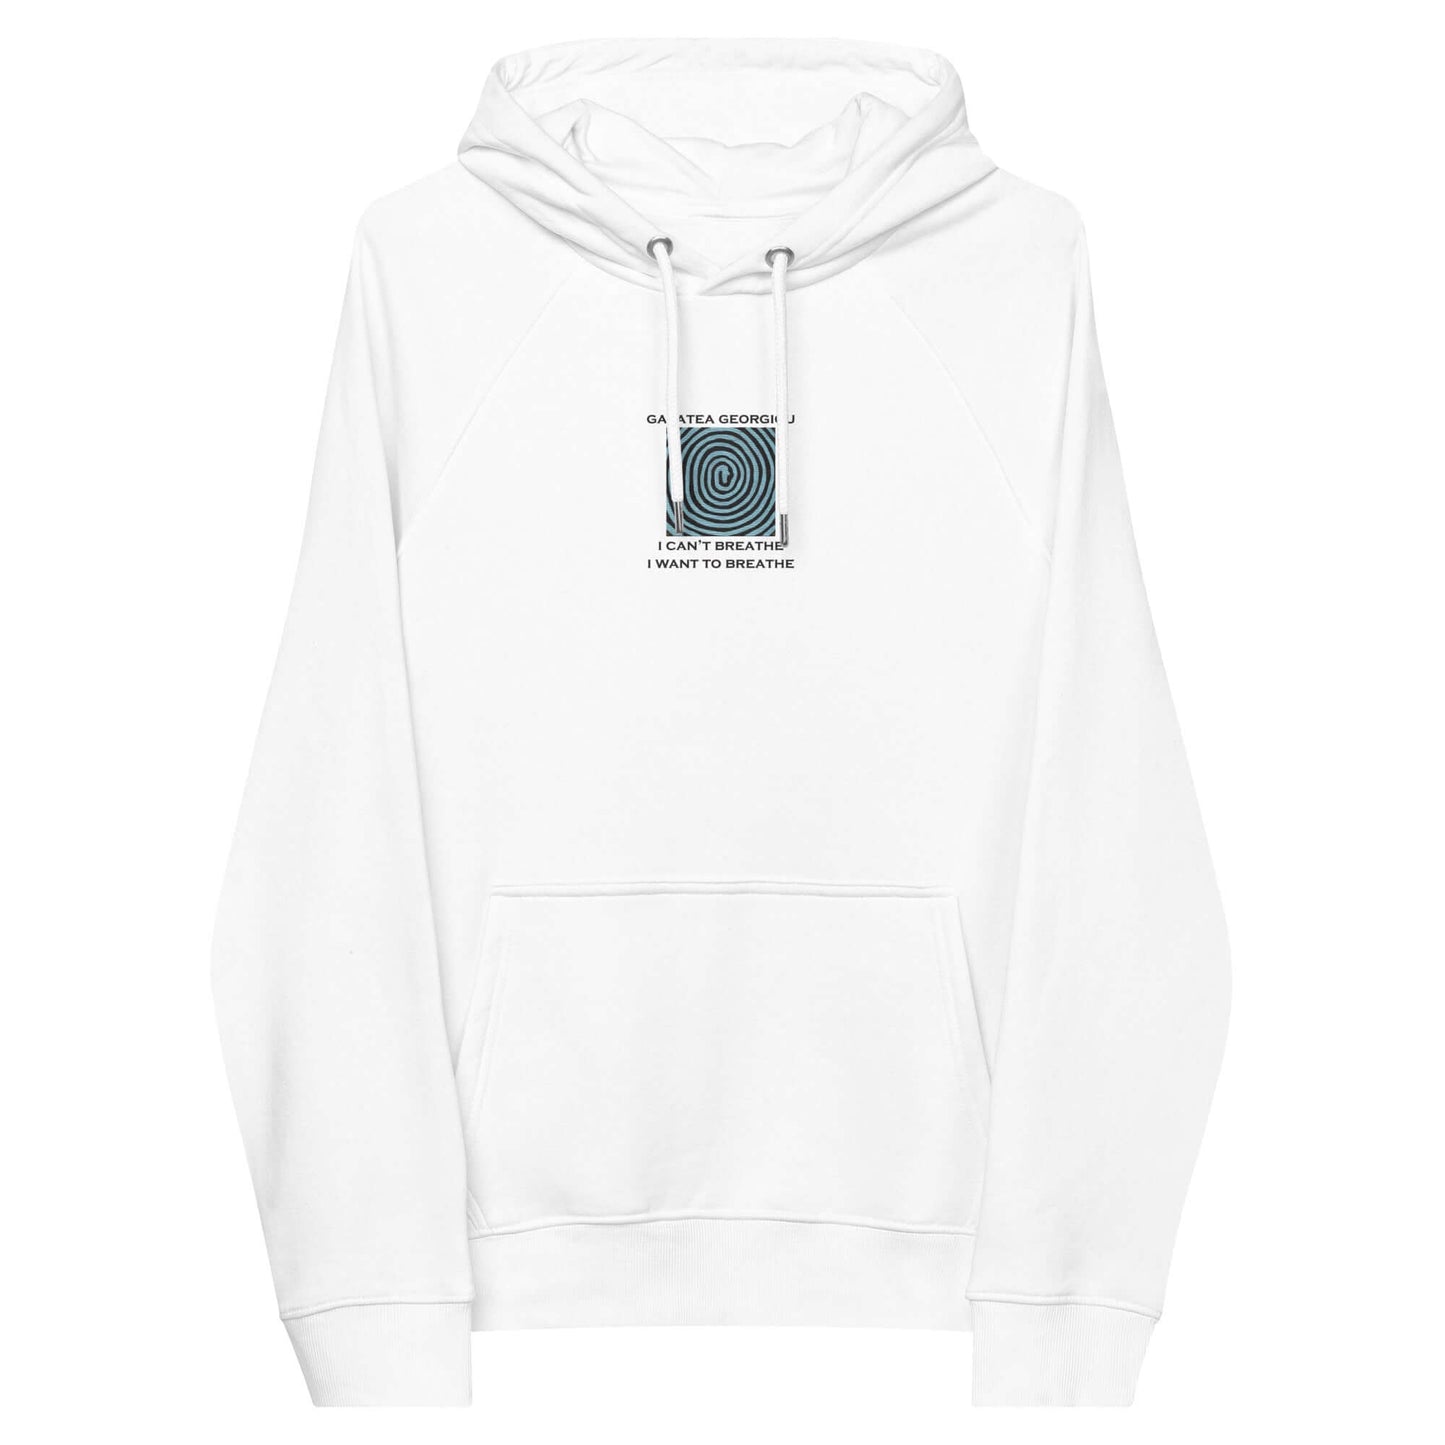 Lying - Embroidery Unisex eco raglan hoodie